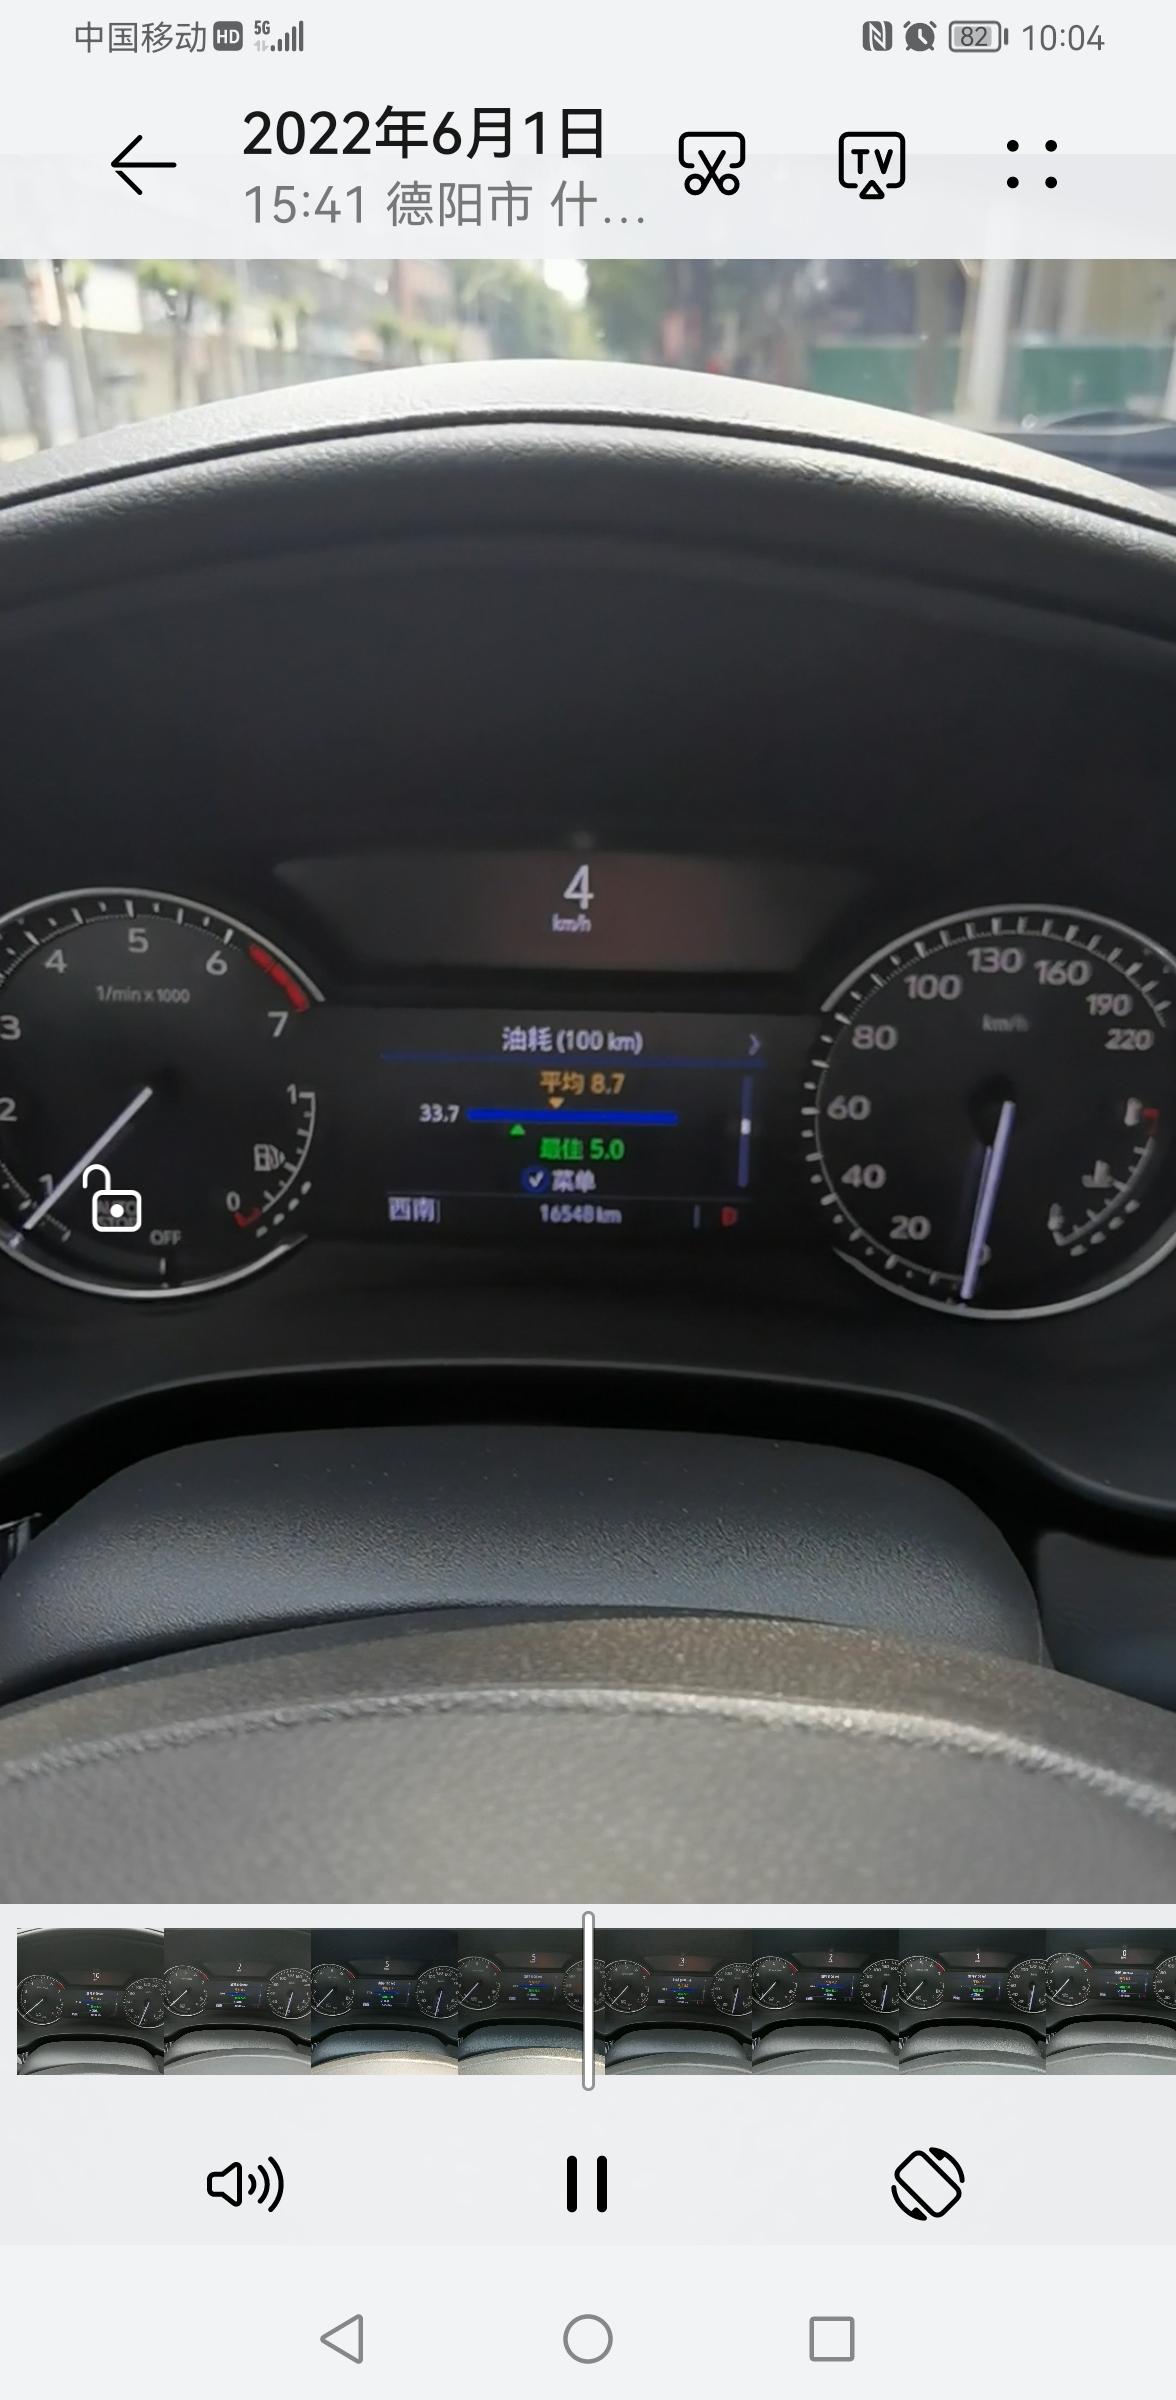 凯迪拉克XT4 XT4在堵车和红绿灯的时候踩刹车到停下的时候油耗上升，下面图片是刹车要停下的情况。有没这种情况